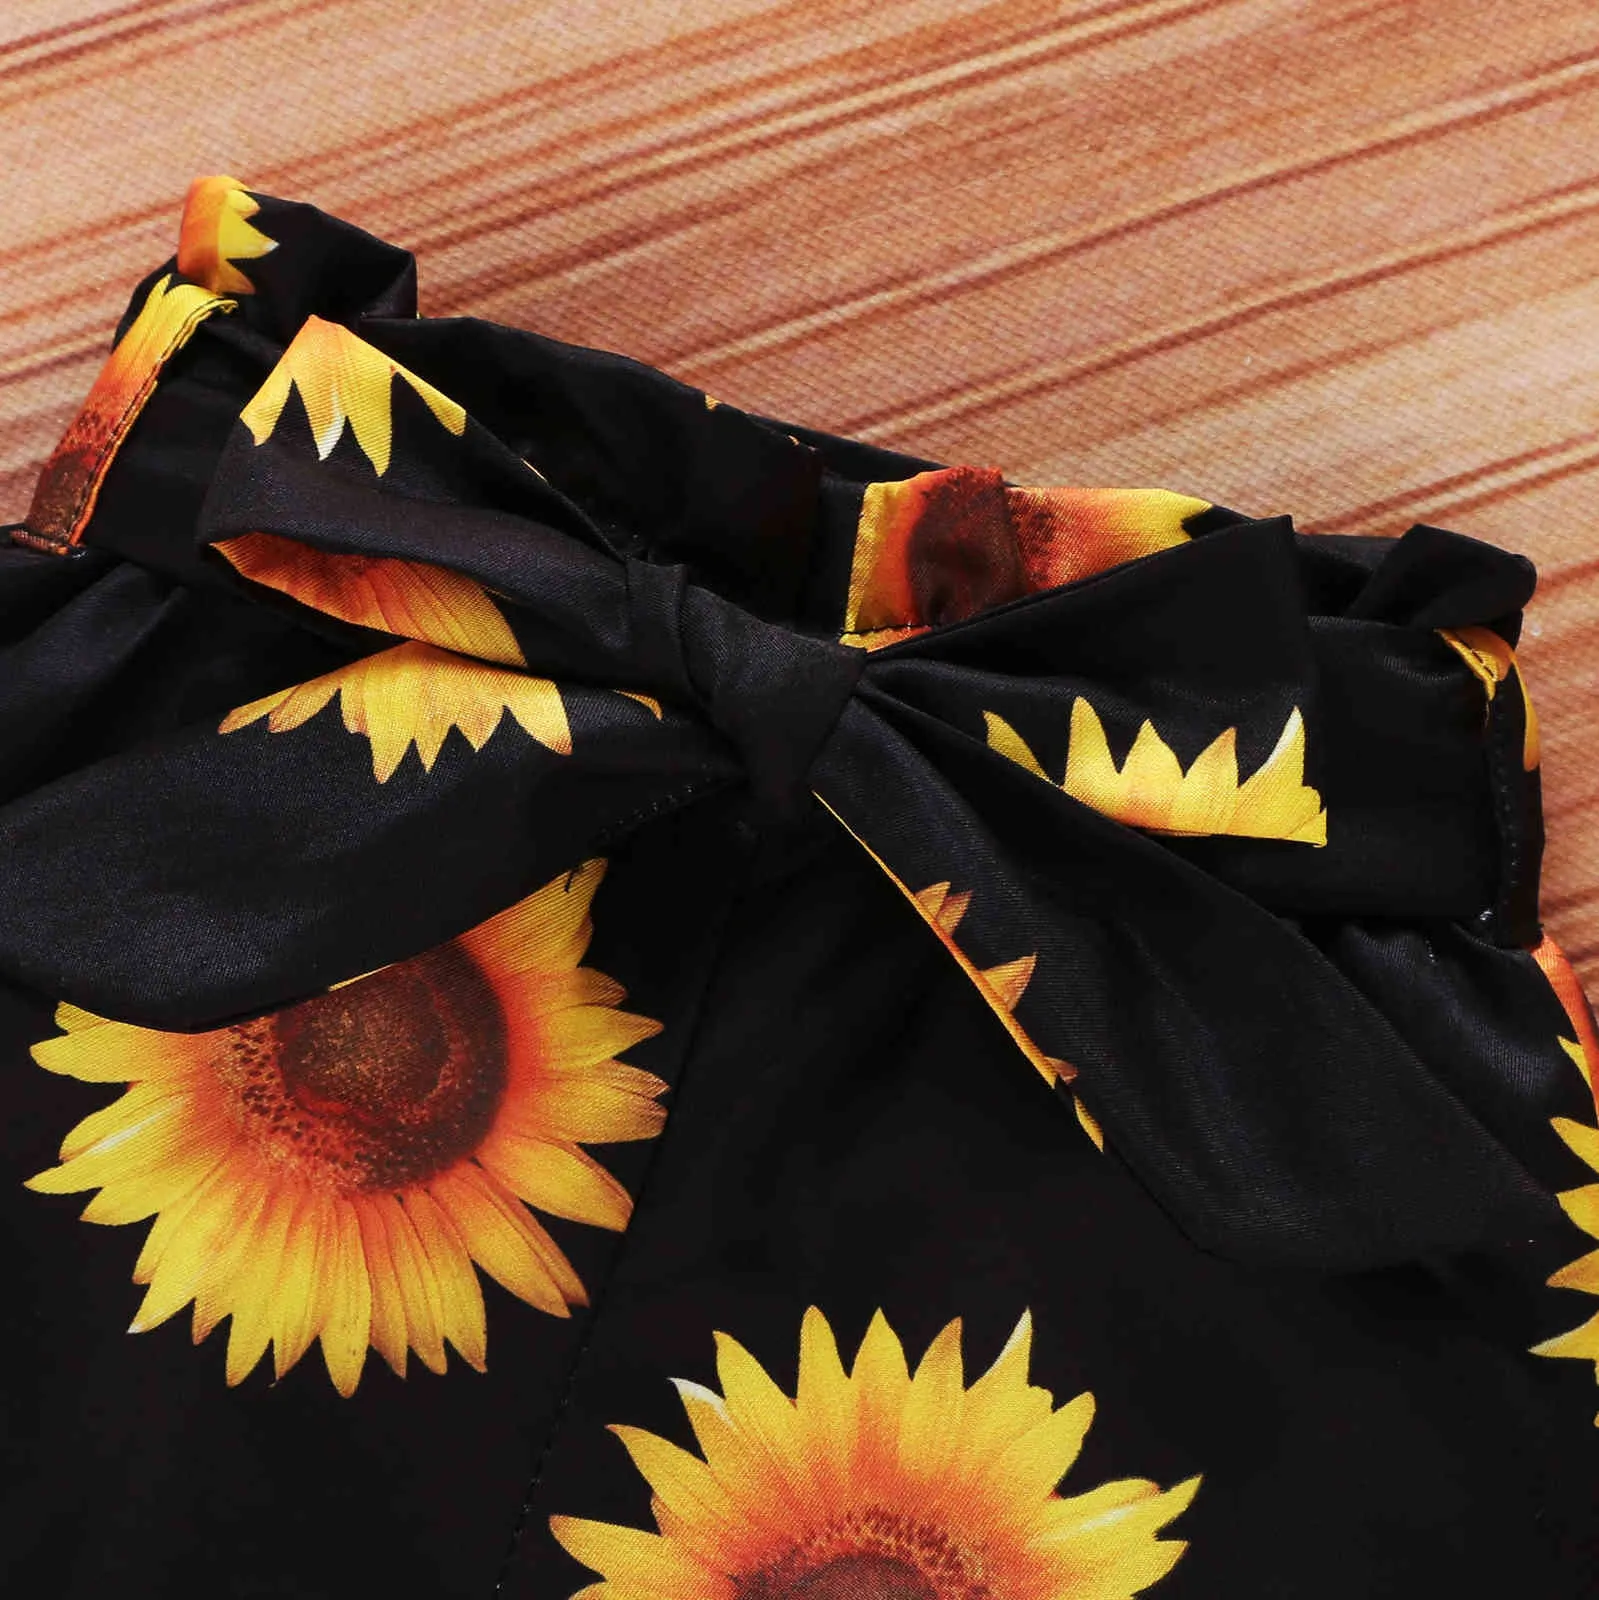 Baby Sunflower Outfit Dzieci Dziewczyny Odzież Stroje Mody Zestawy 3 Kawałek Dla Dziewczyny Set 210529